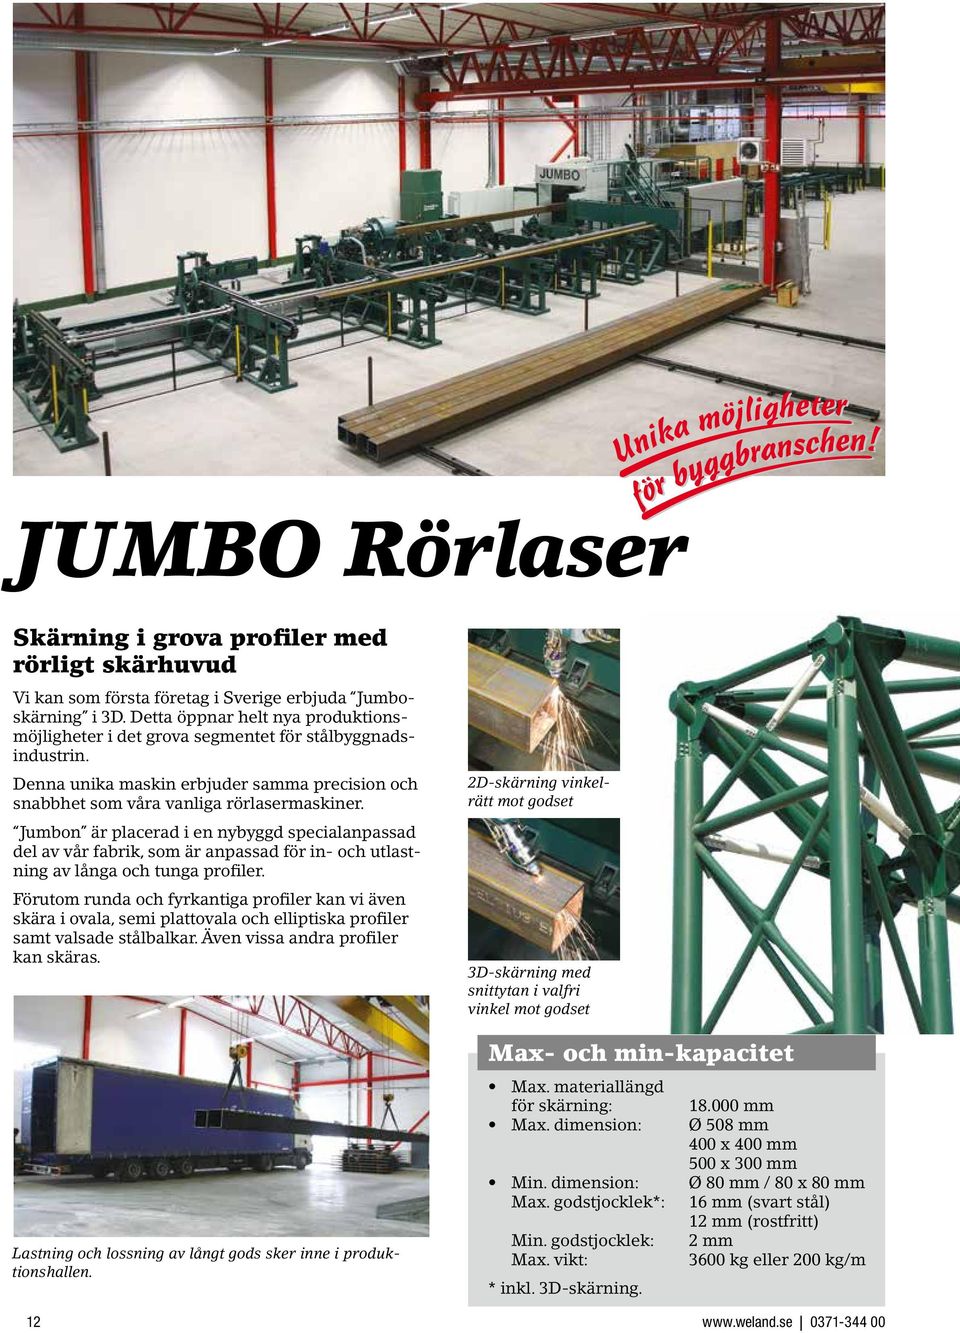 Jumbon är placerad i en nybyggd specialanpassad del av vår fabrik, som är anpassad för in- och utlastning av långa och tunga profiler.